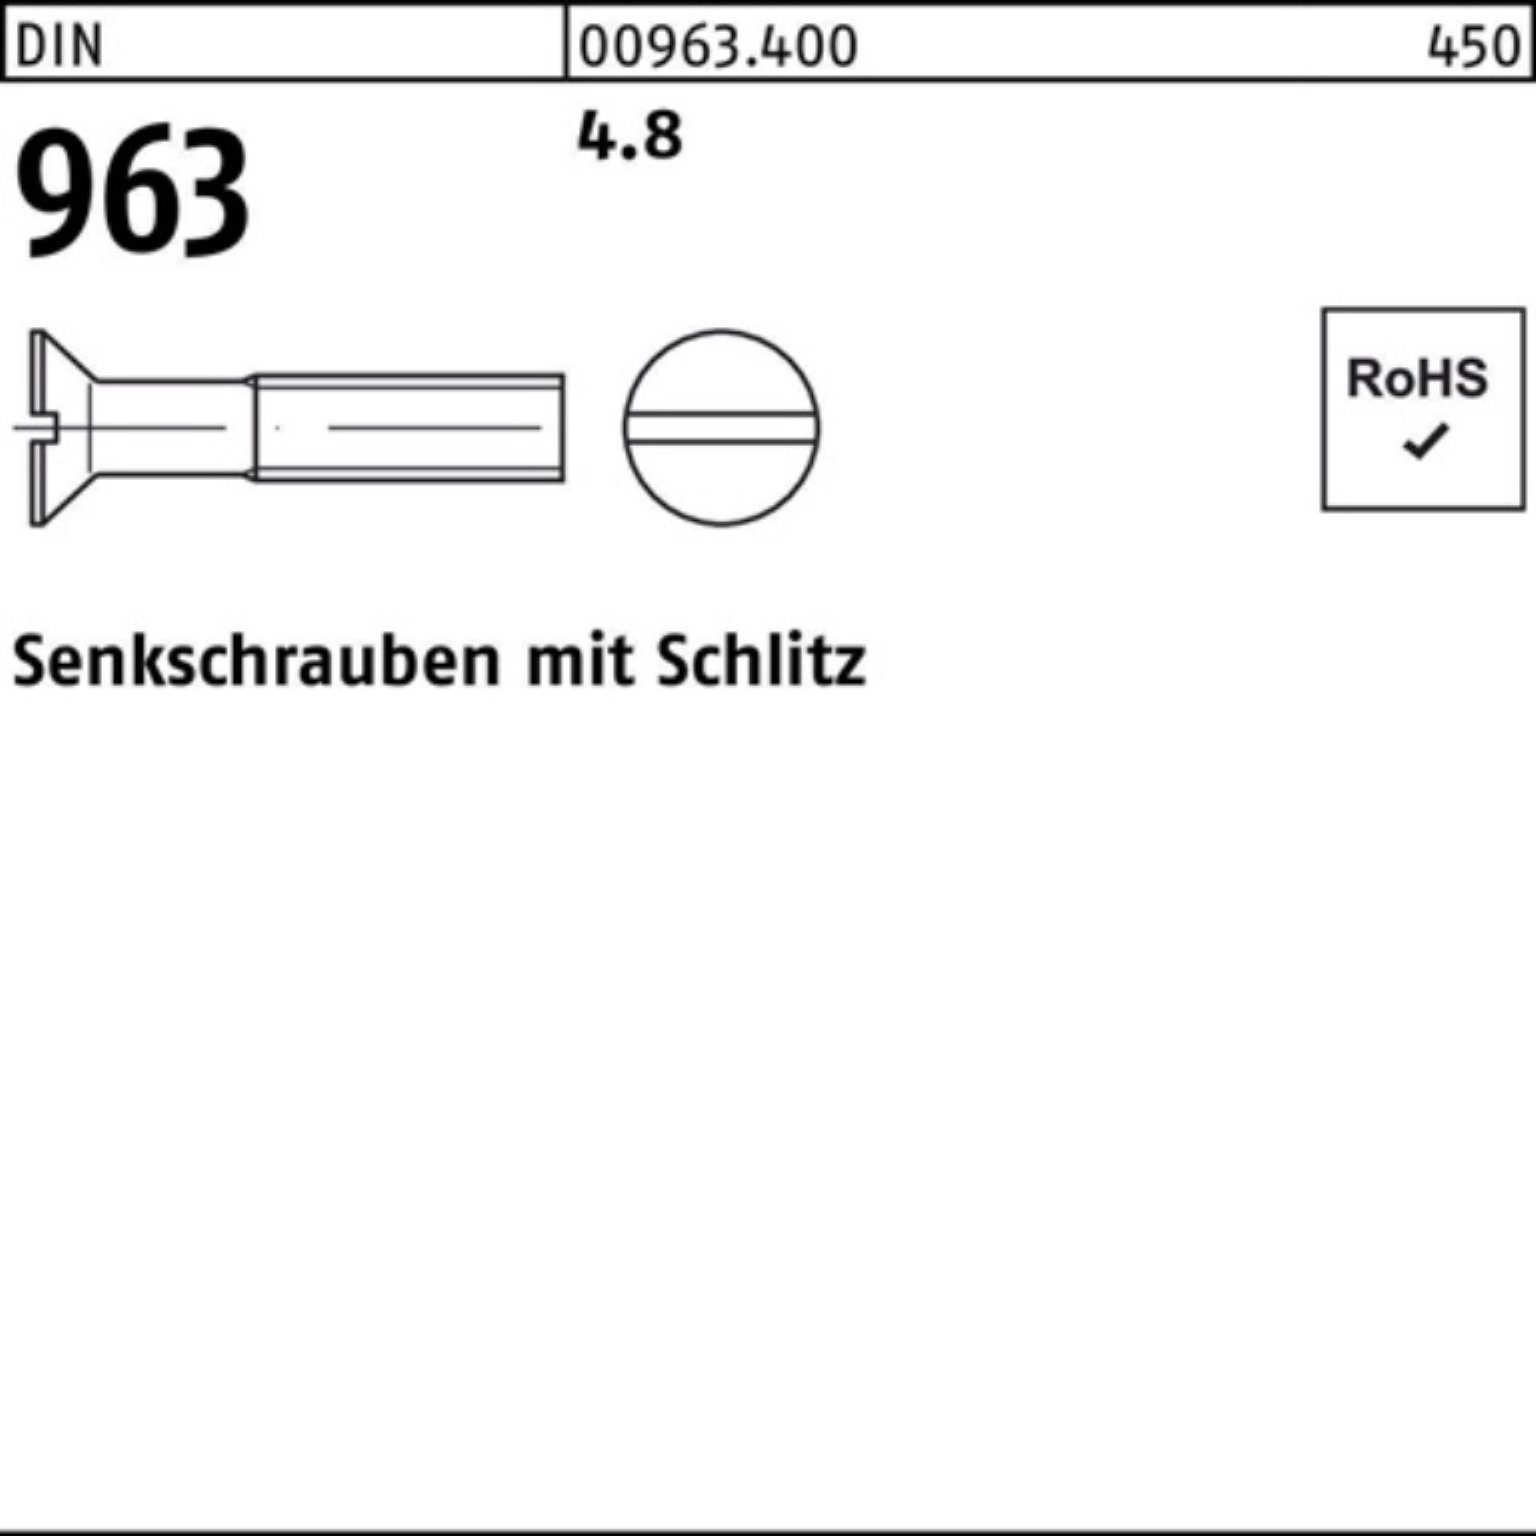 Senkschraube 4.8 963 M10x Reyher 963 Stück 200 DIN Senkschraube Schlitz 16 200er Pack DIN